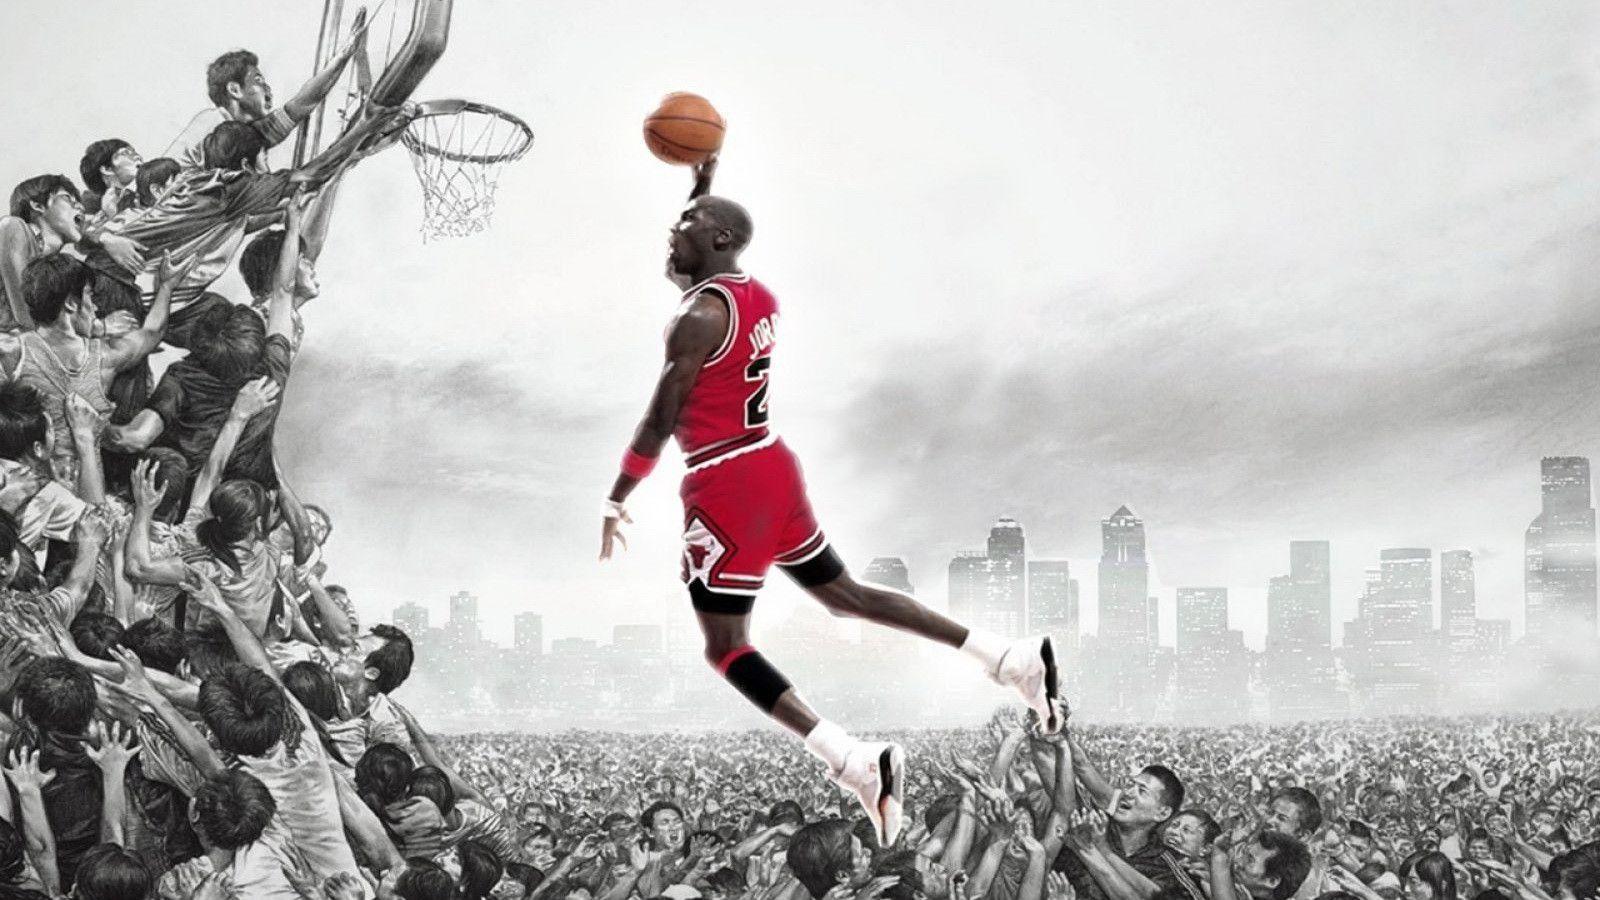 Michael Jordan Wallpaper 1080p